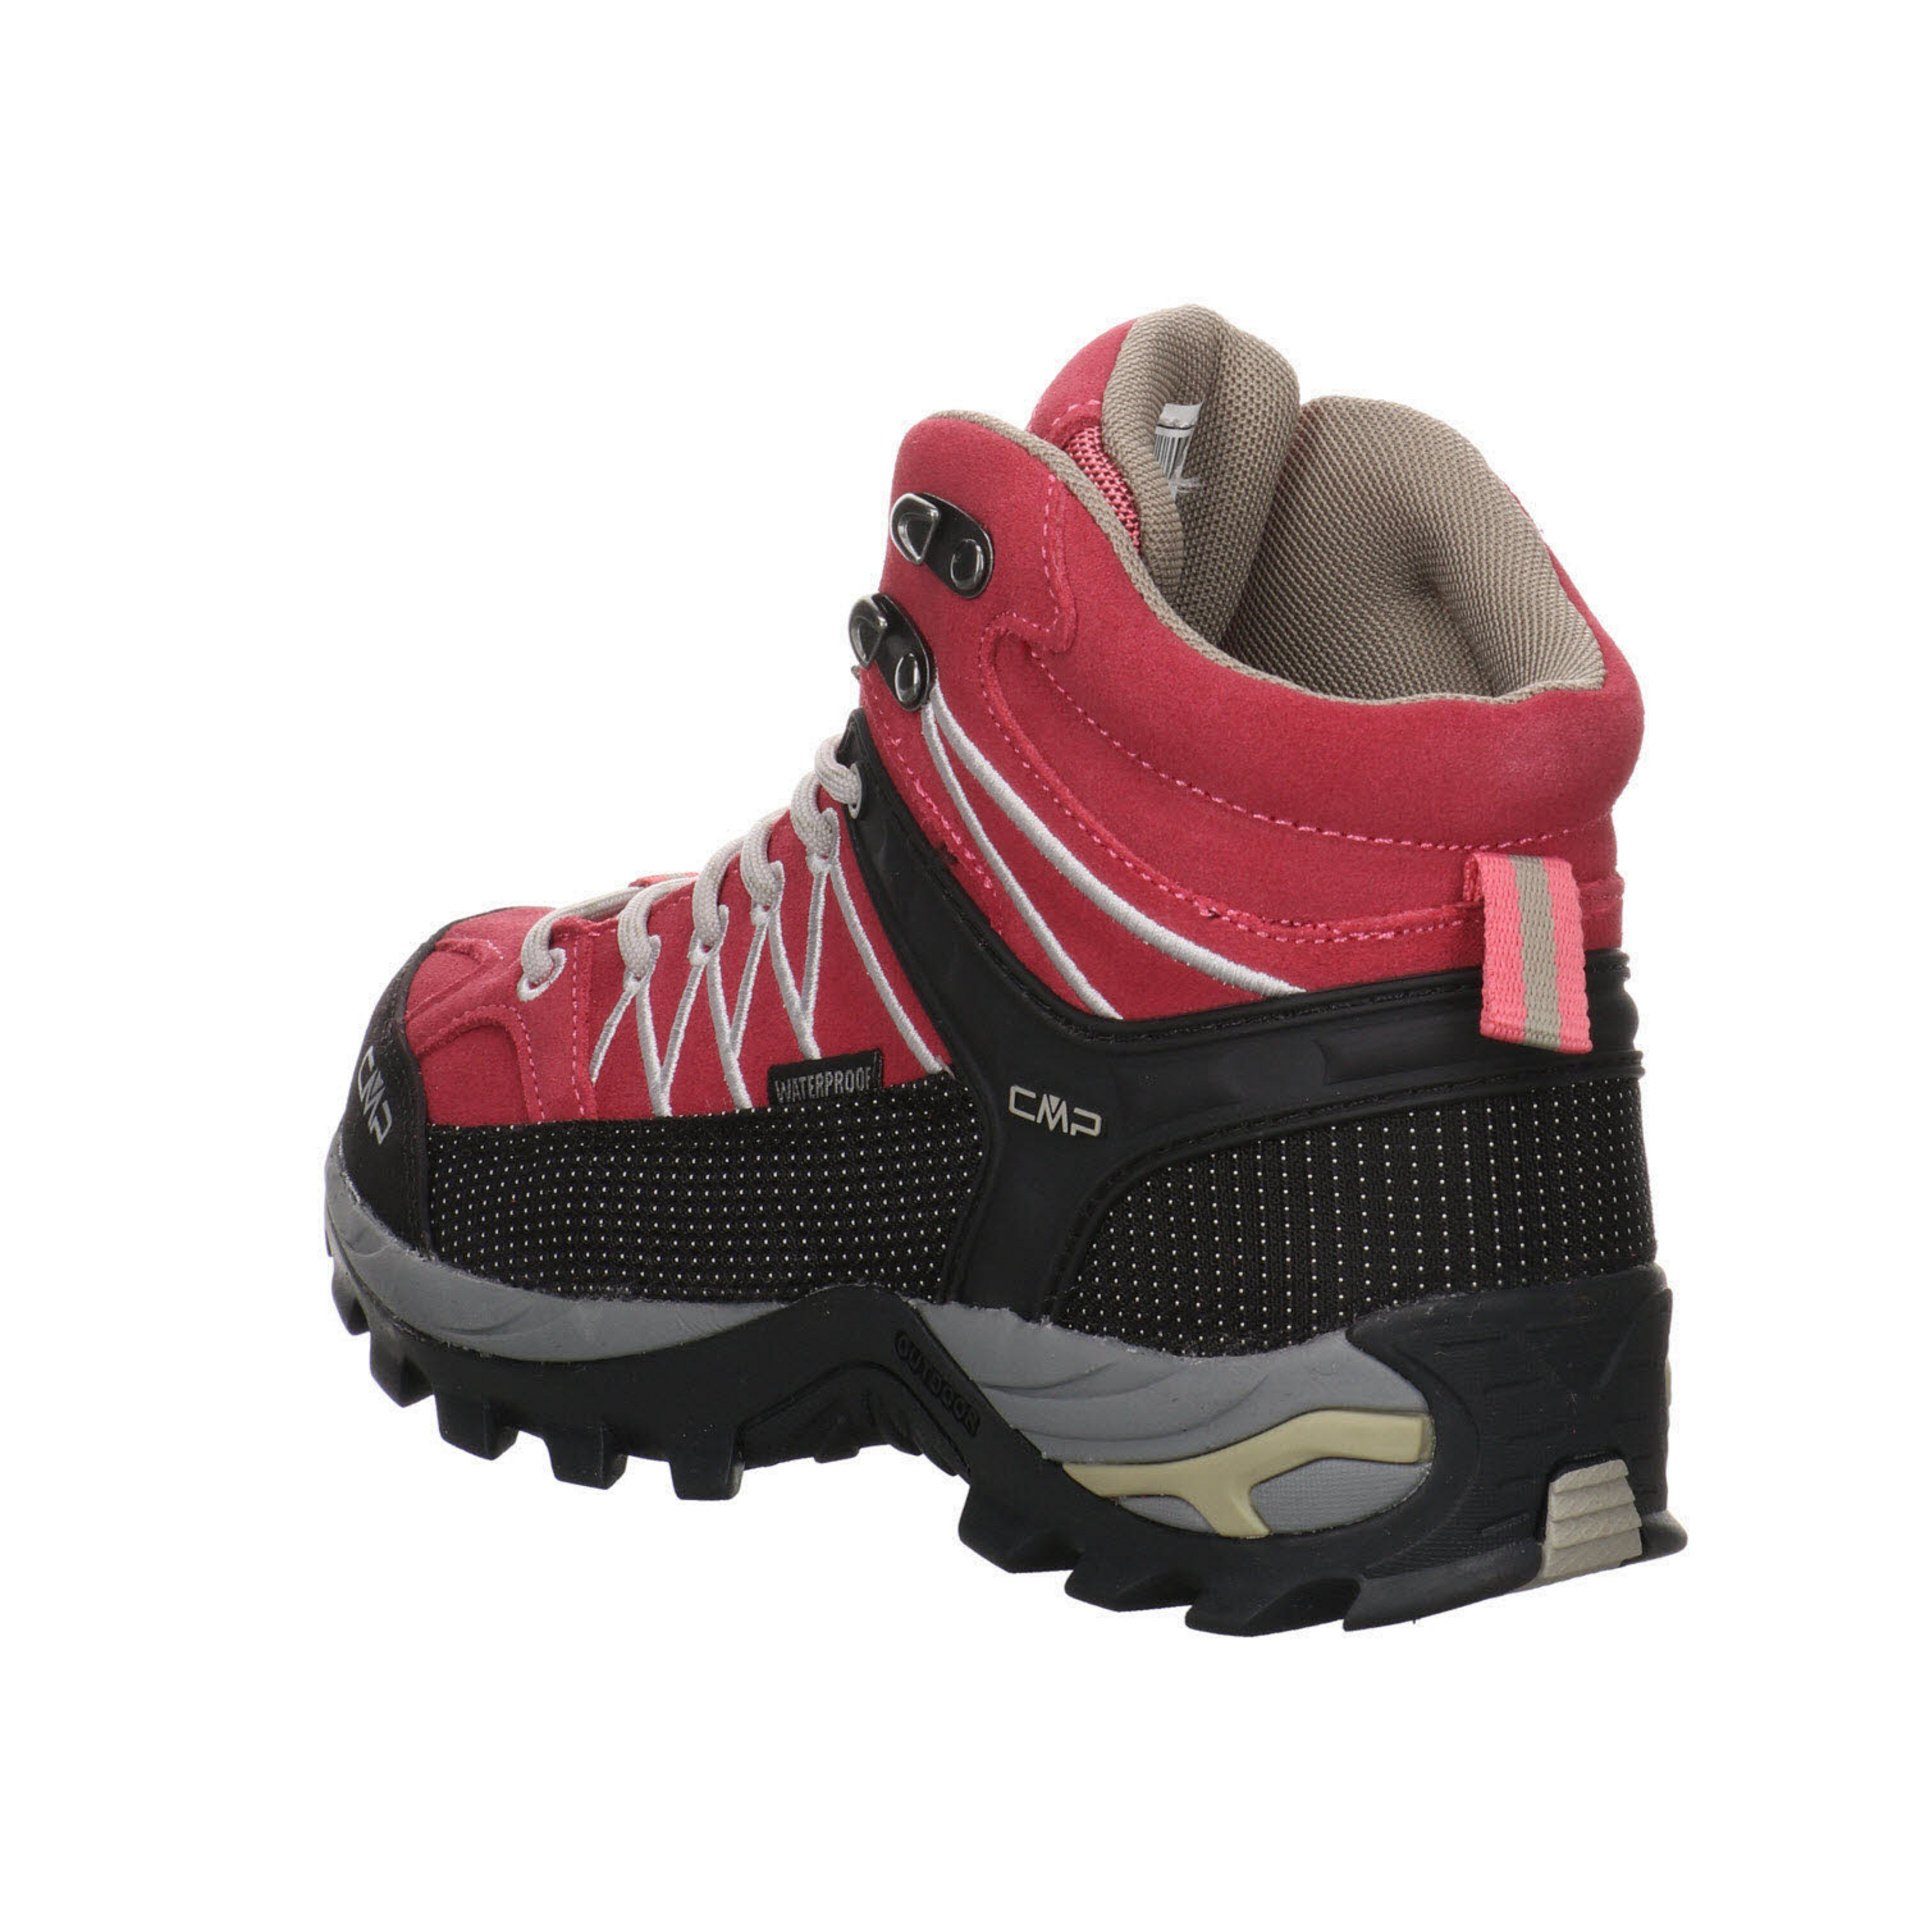 CMP Damen Schuhe Outdoor Rigel Outdoorschuh Leder-/Textilkombination ROSE-SAND Mid Outdoorschuh